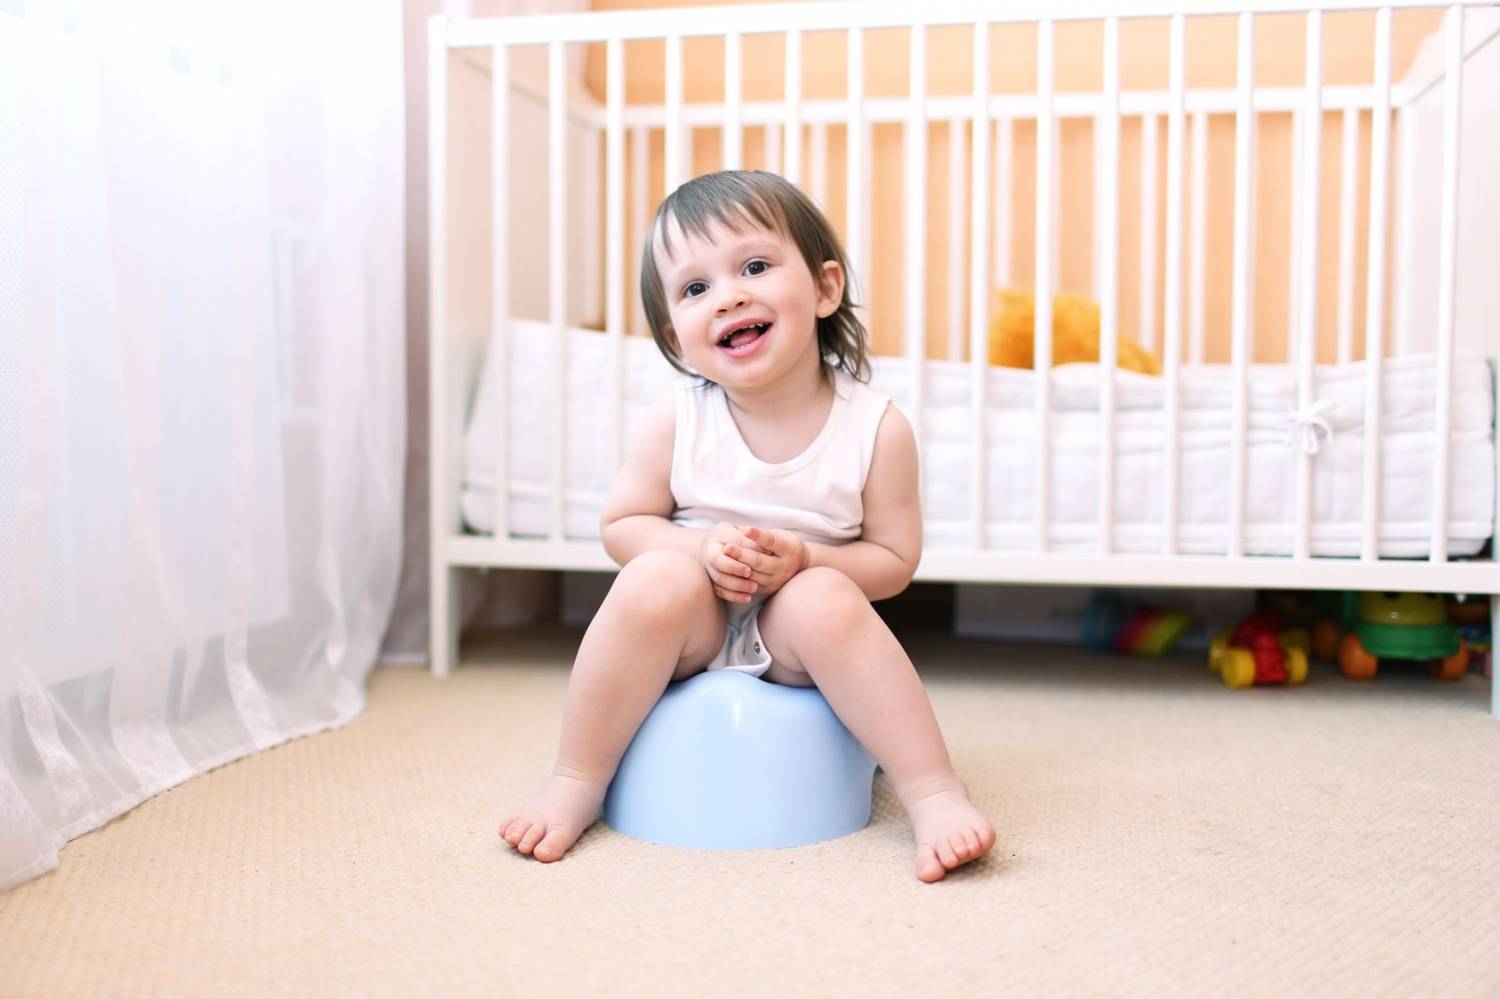 Иногда стул новорожденного может сигнализировать родителям о некоторых проблемах со здоровьем ребенка